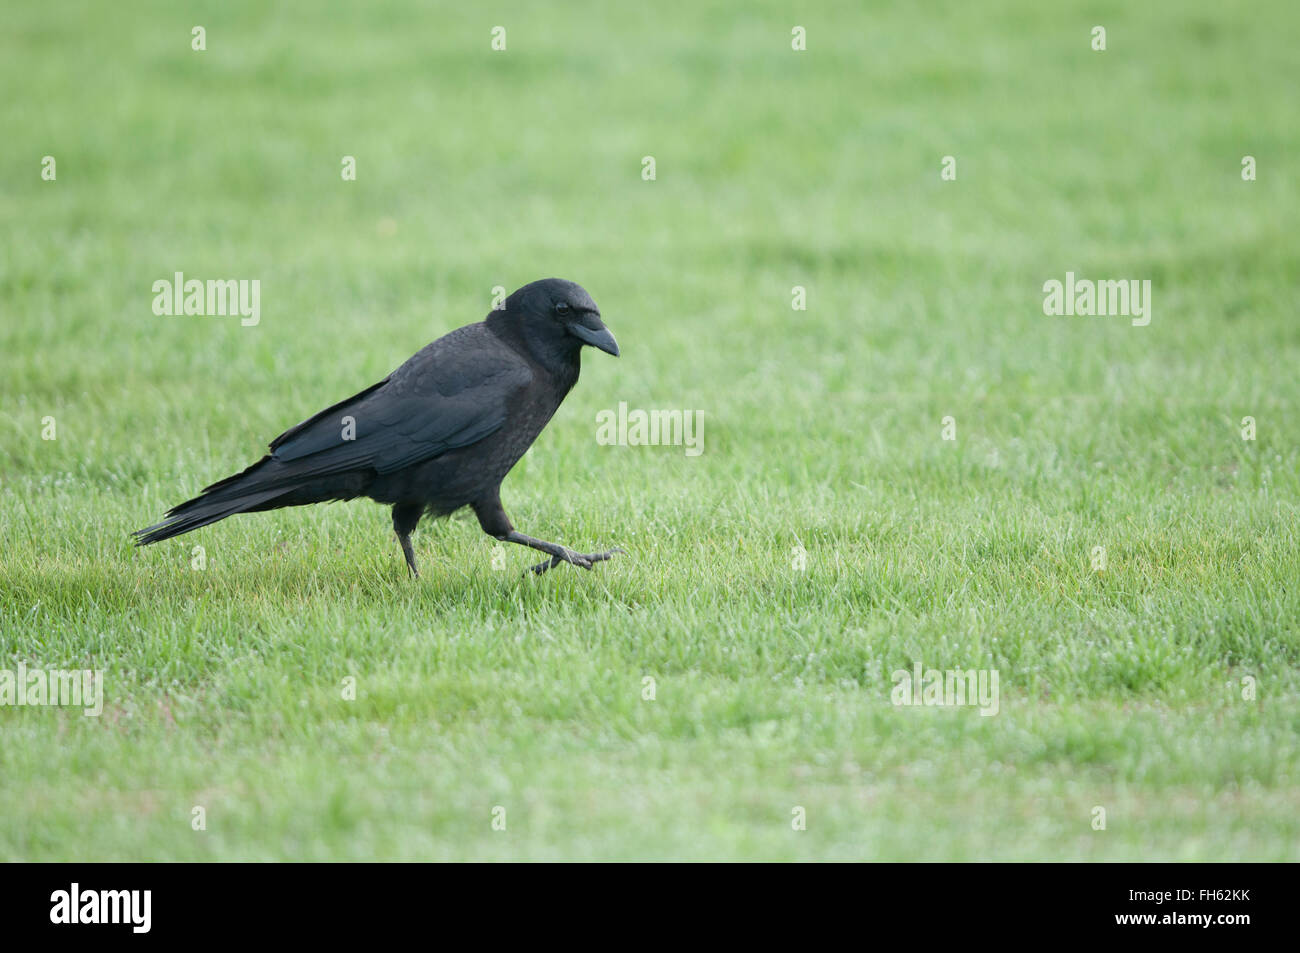 Corvo nero camminare sull'erba Foto Stock